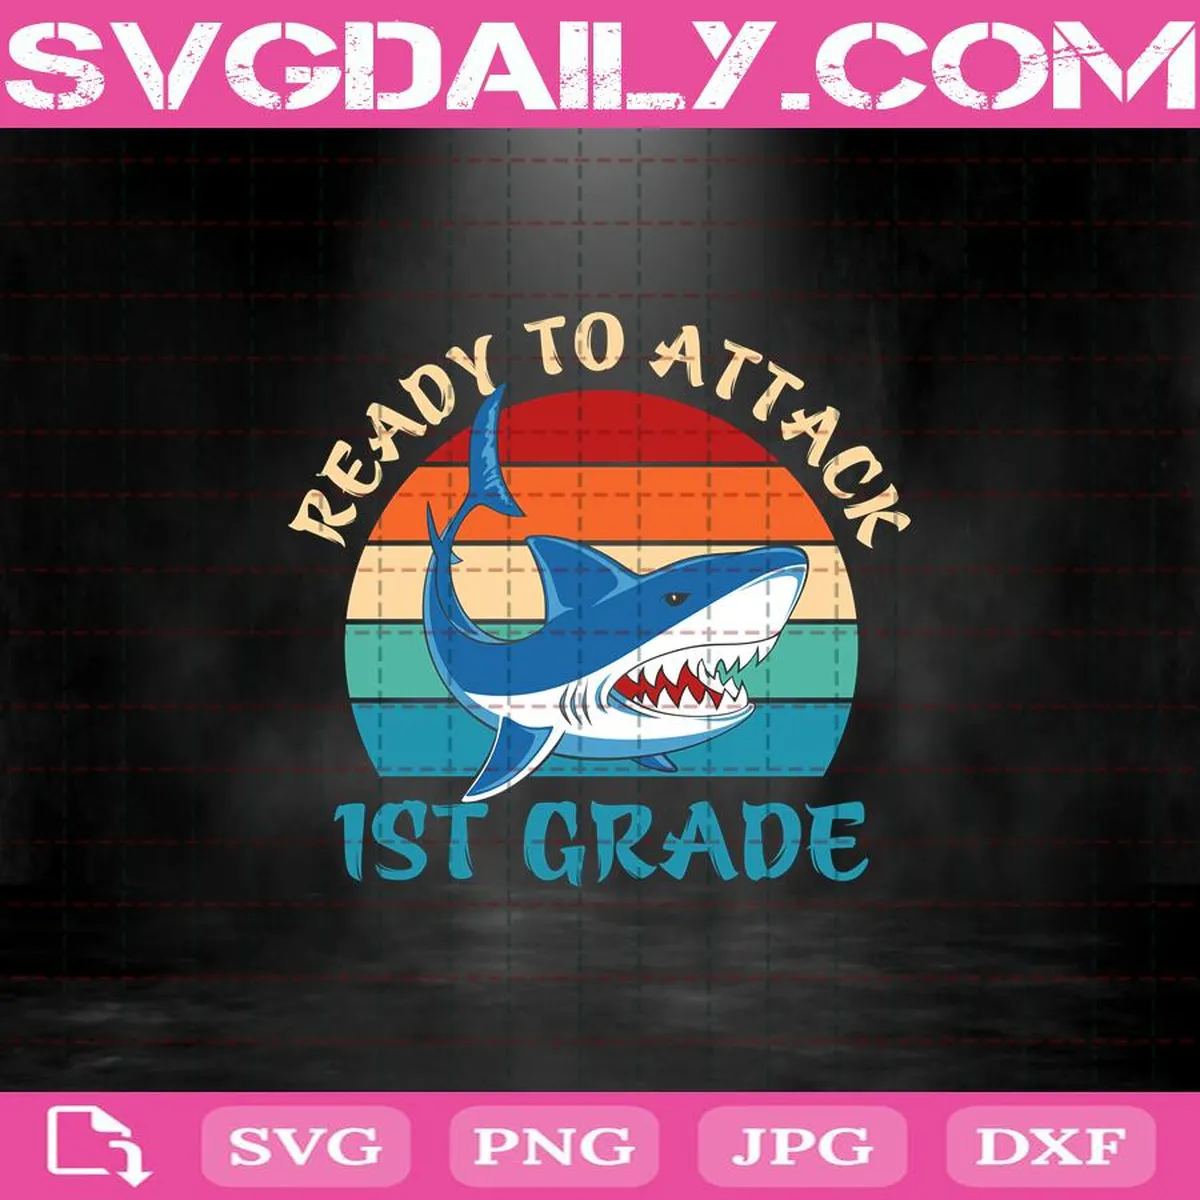 Ready To Attack 1st Grade Svg, 1st Grade Svg, Shark 1st Grade Svg, Shark Back To School Svg, Back To School Svg